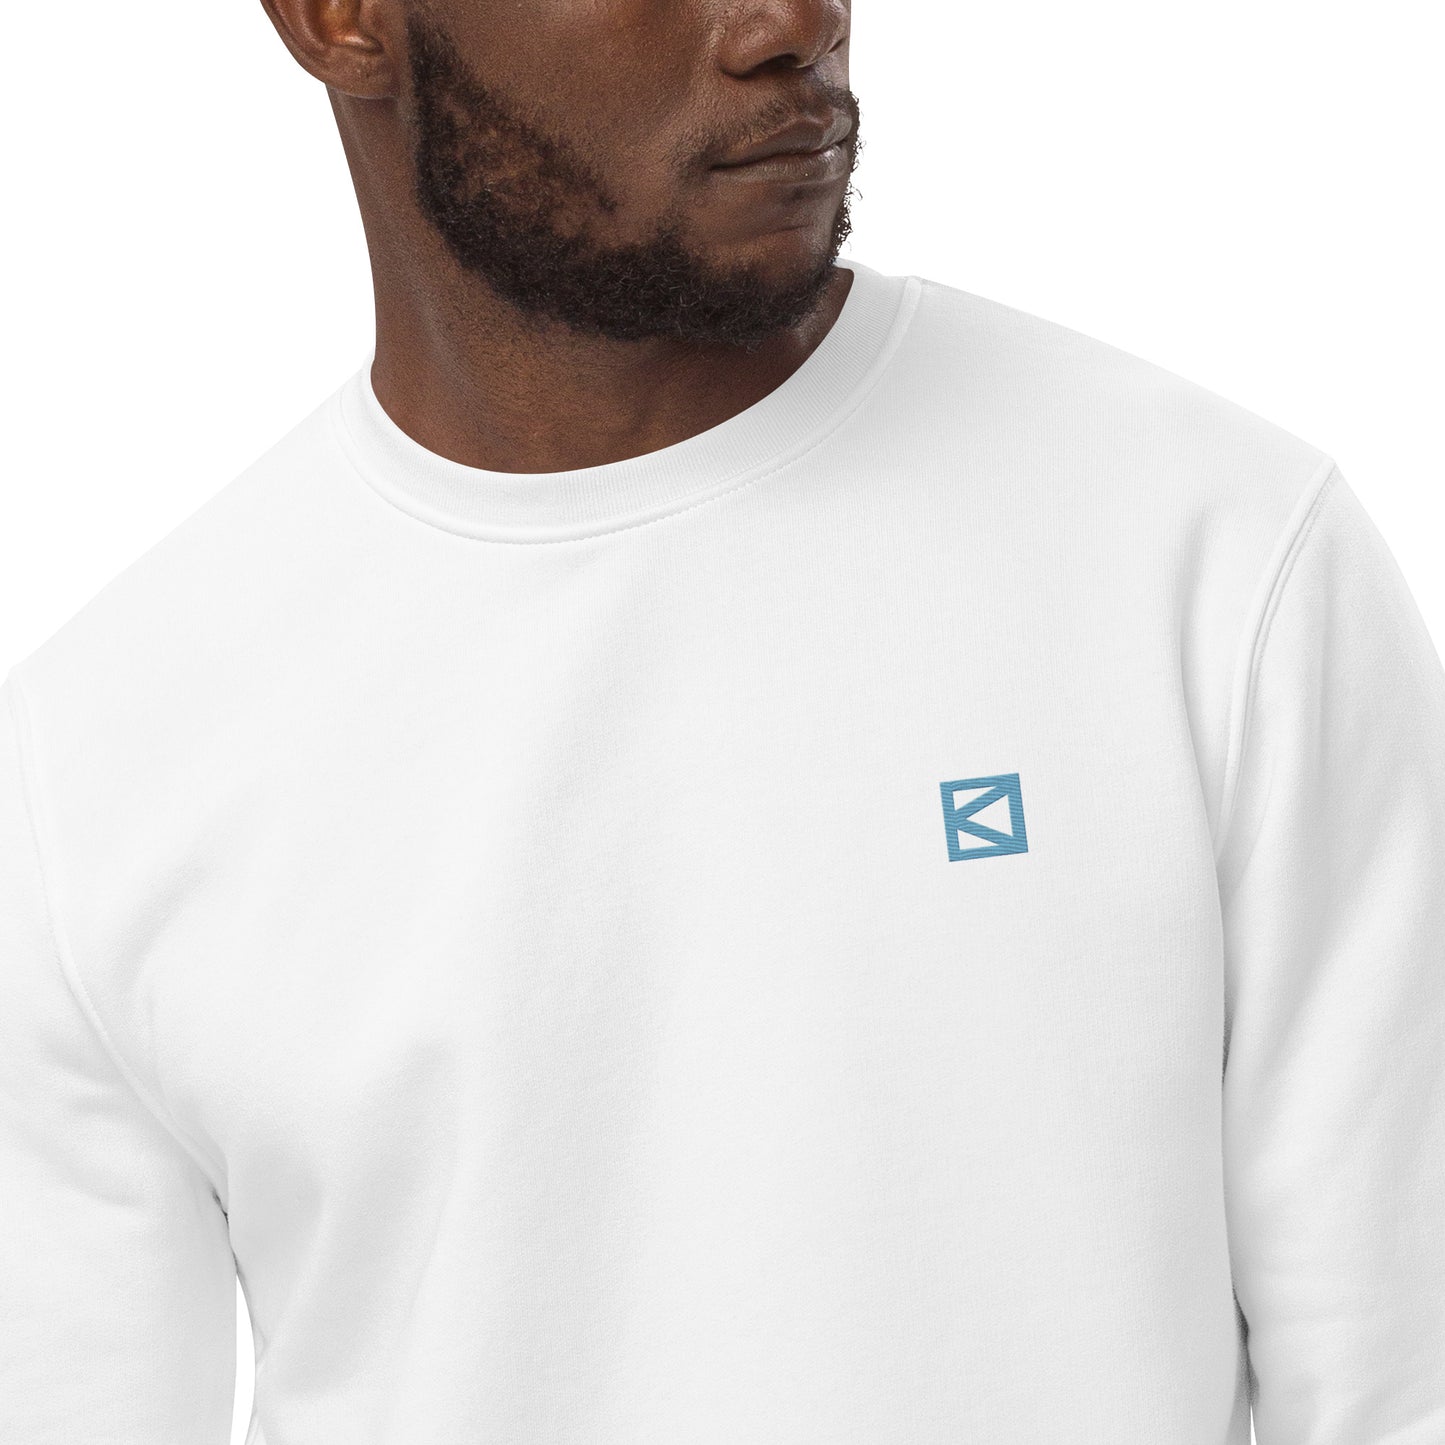 bd Stich Logo - Turkis - baobabwod artwear - Unisex Heavyweight Essential Eco Sweatshirt